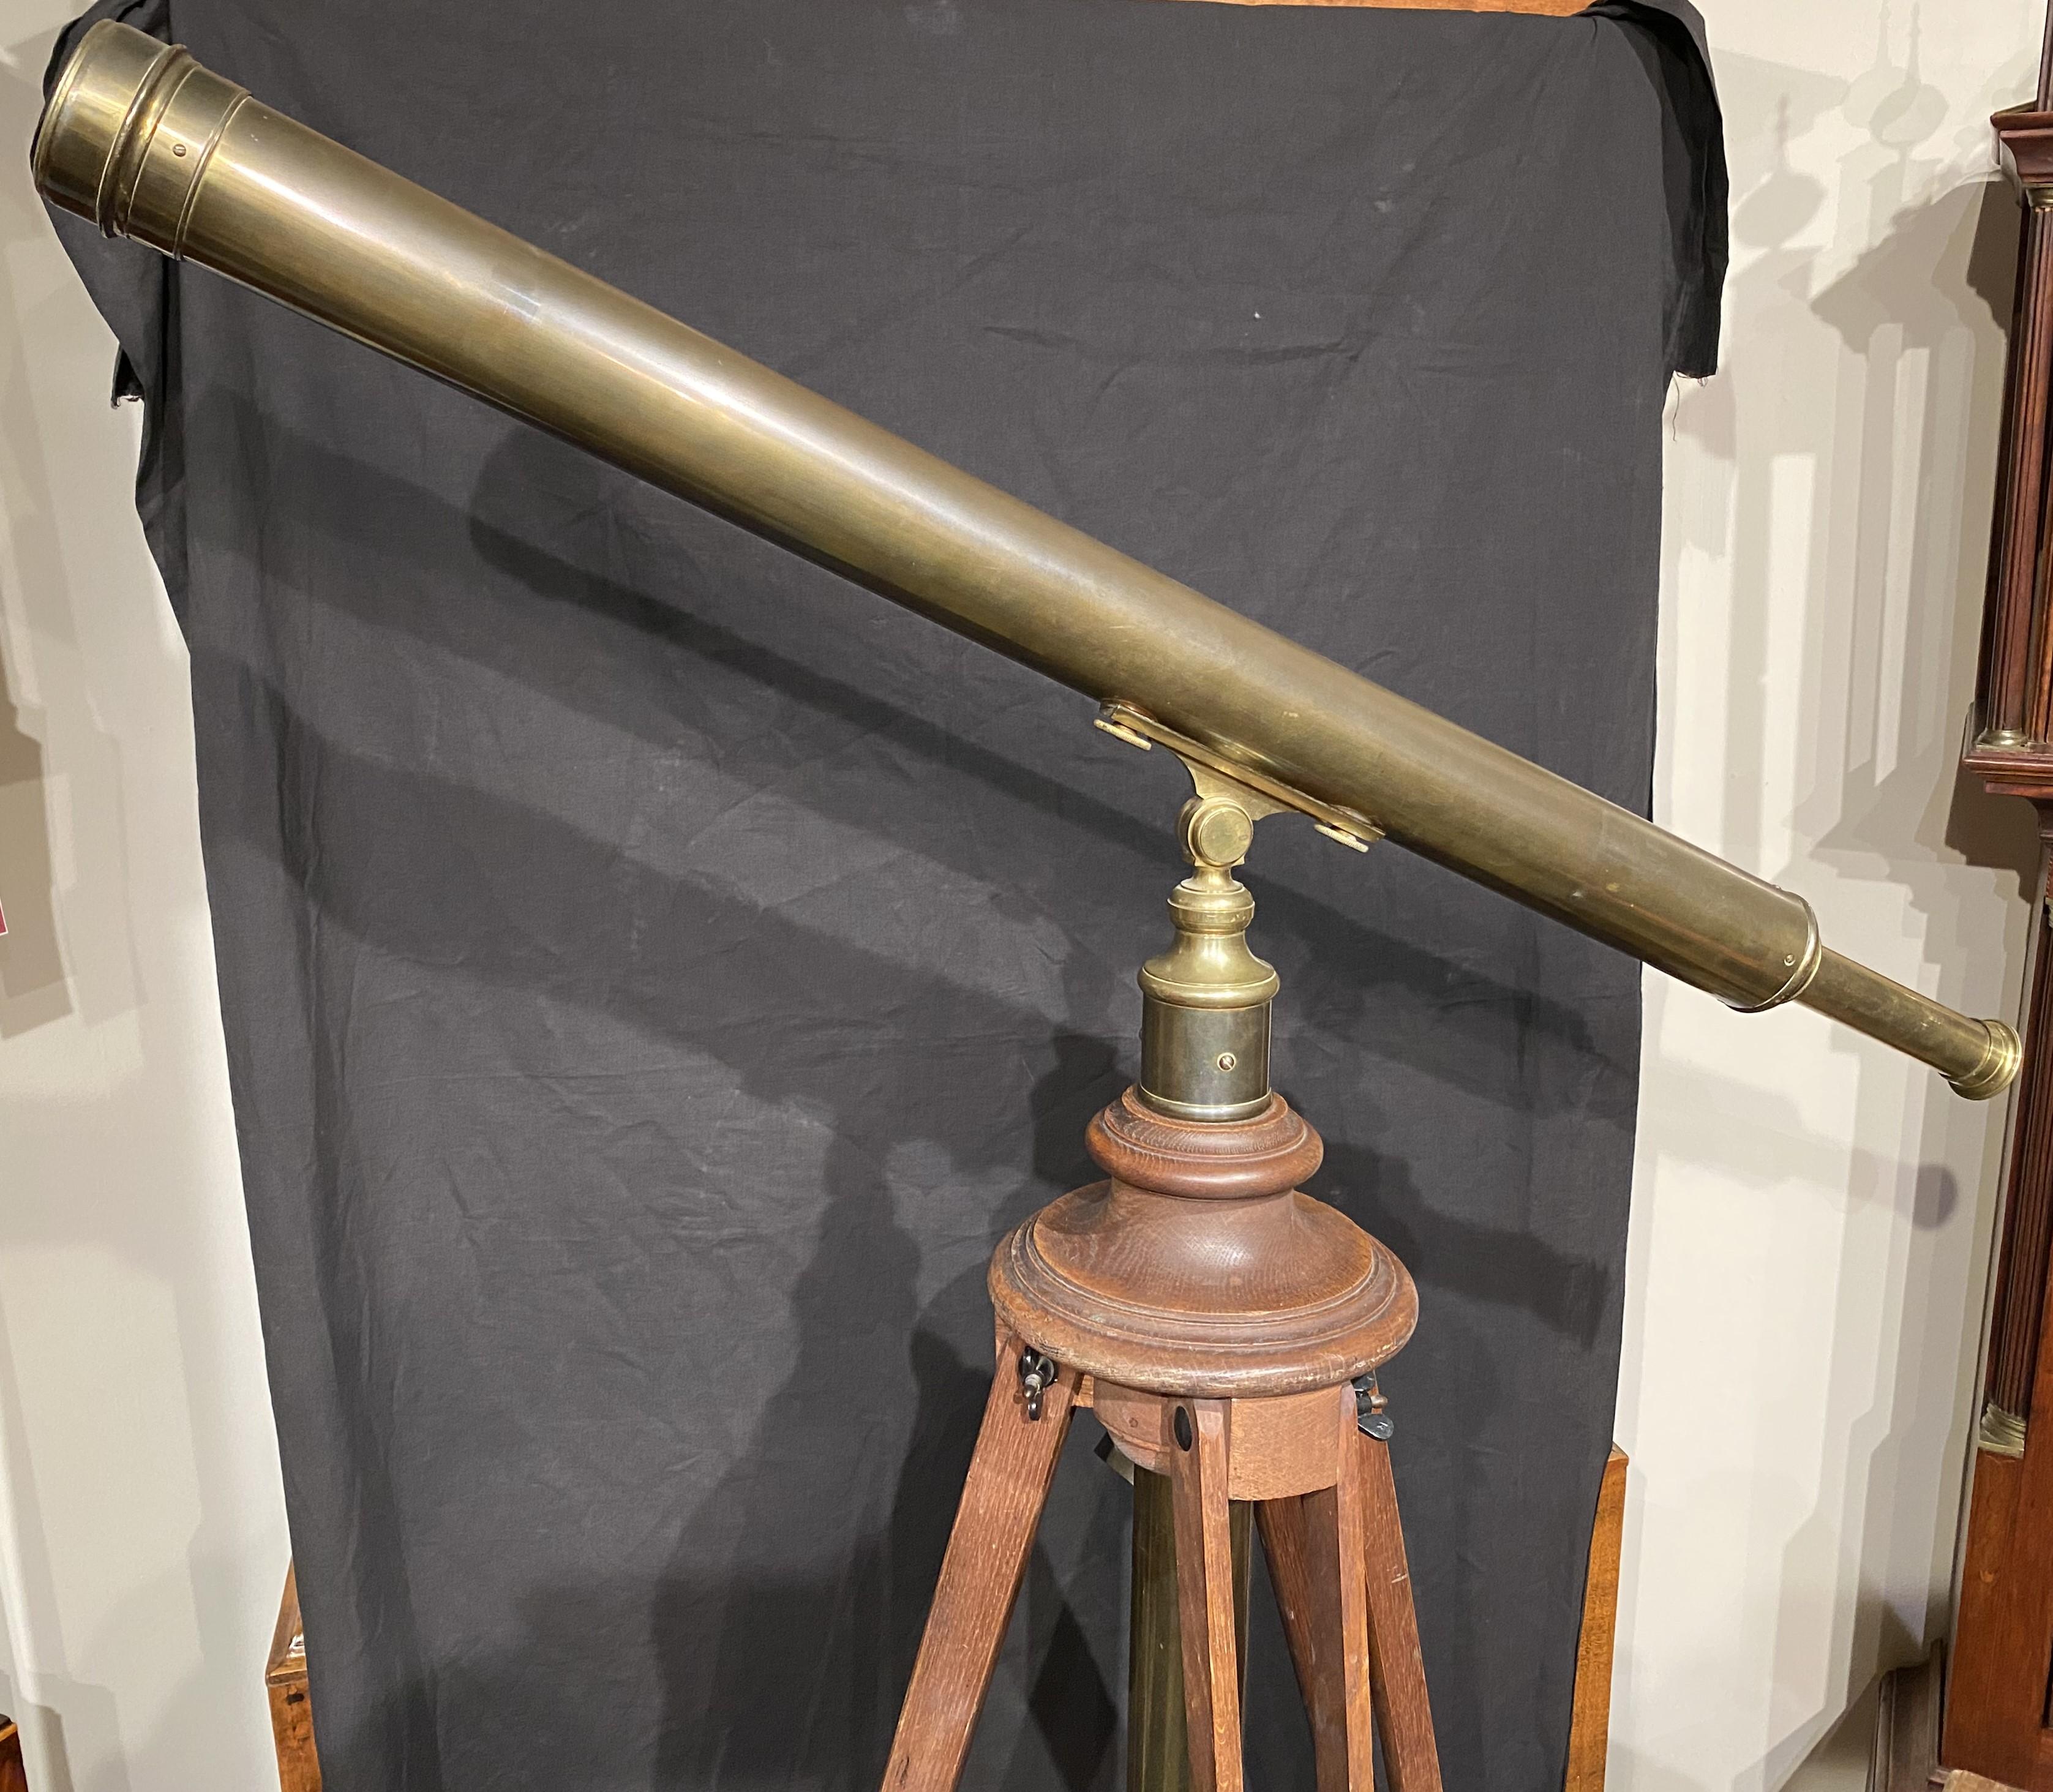 Un beau télescope antique en laiton, estampillé Andrew J. Lloyds Company, un détaillant de Boston, MA, actif entre 1850 et 1875. Tubes et accessoires en laiton. Comprend le trépied en bois pliable d'origine et la valise de voyage en bois à queue